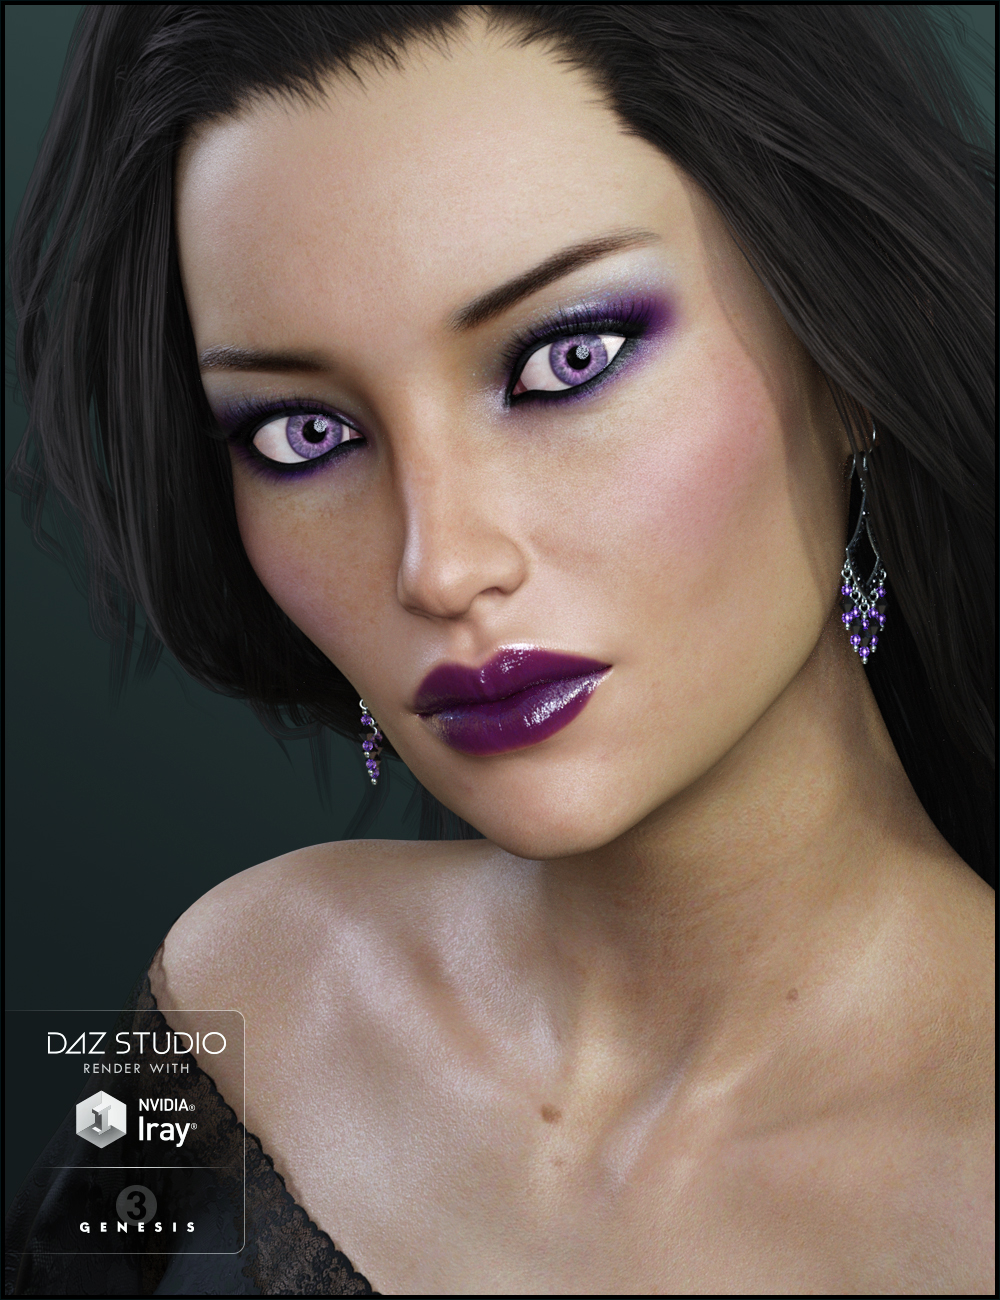 FWSA Mina HD for Arabella 7 by: Fred Winkler ArtSabby, 3D Models by Daz 3D